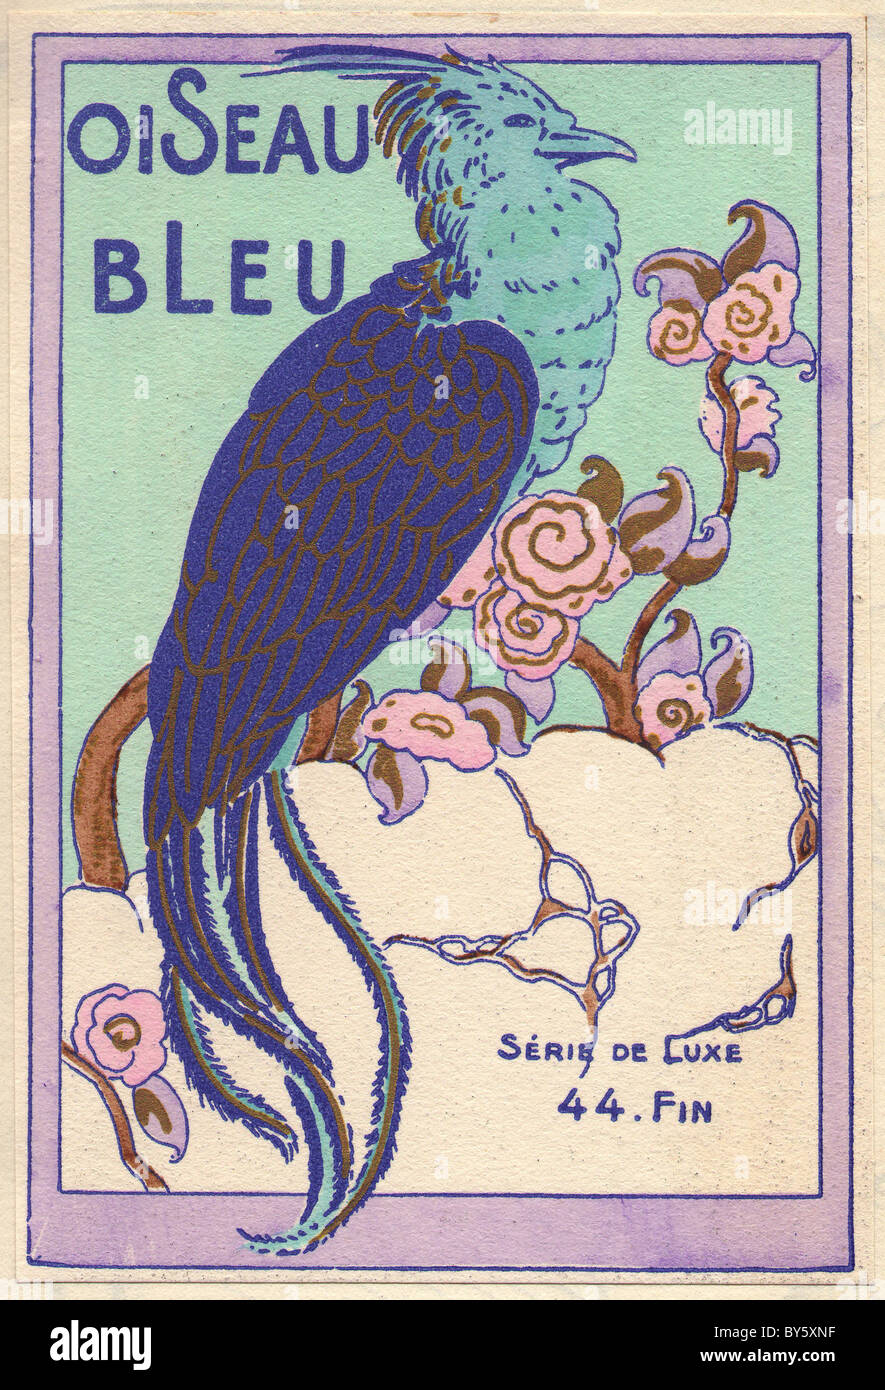 1920er Jahre Art-deco-Werbung für Blue Bird, zeigt einen blauen Vogel auf einem blühenden Baum vor dem türkisfarbenen Hintergrund. Stockfoto